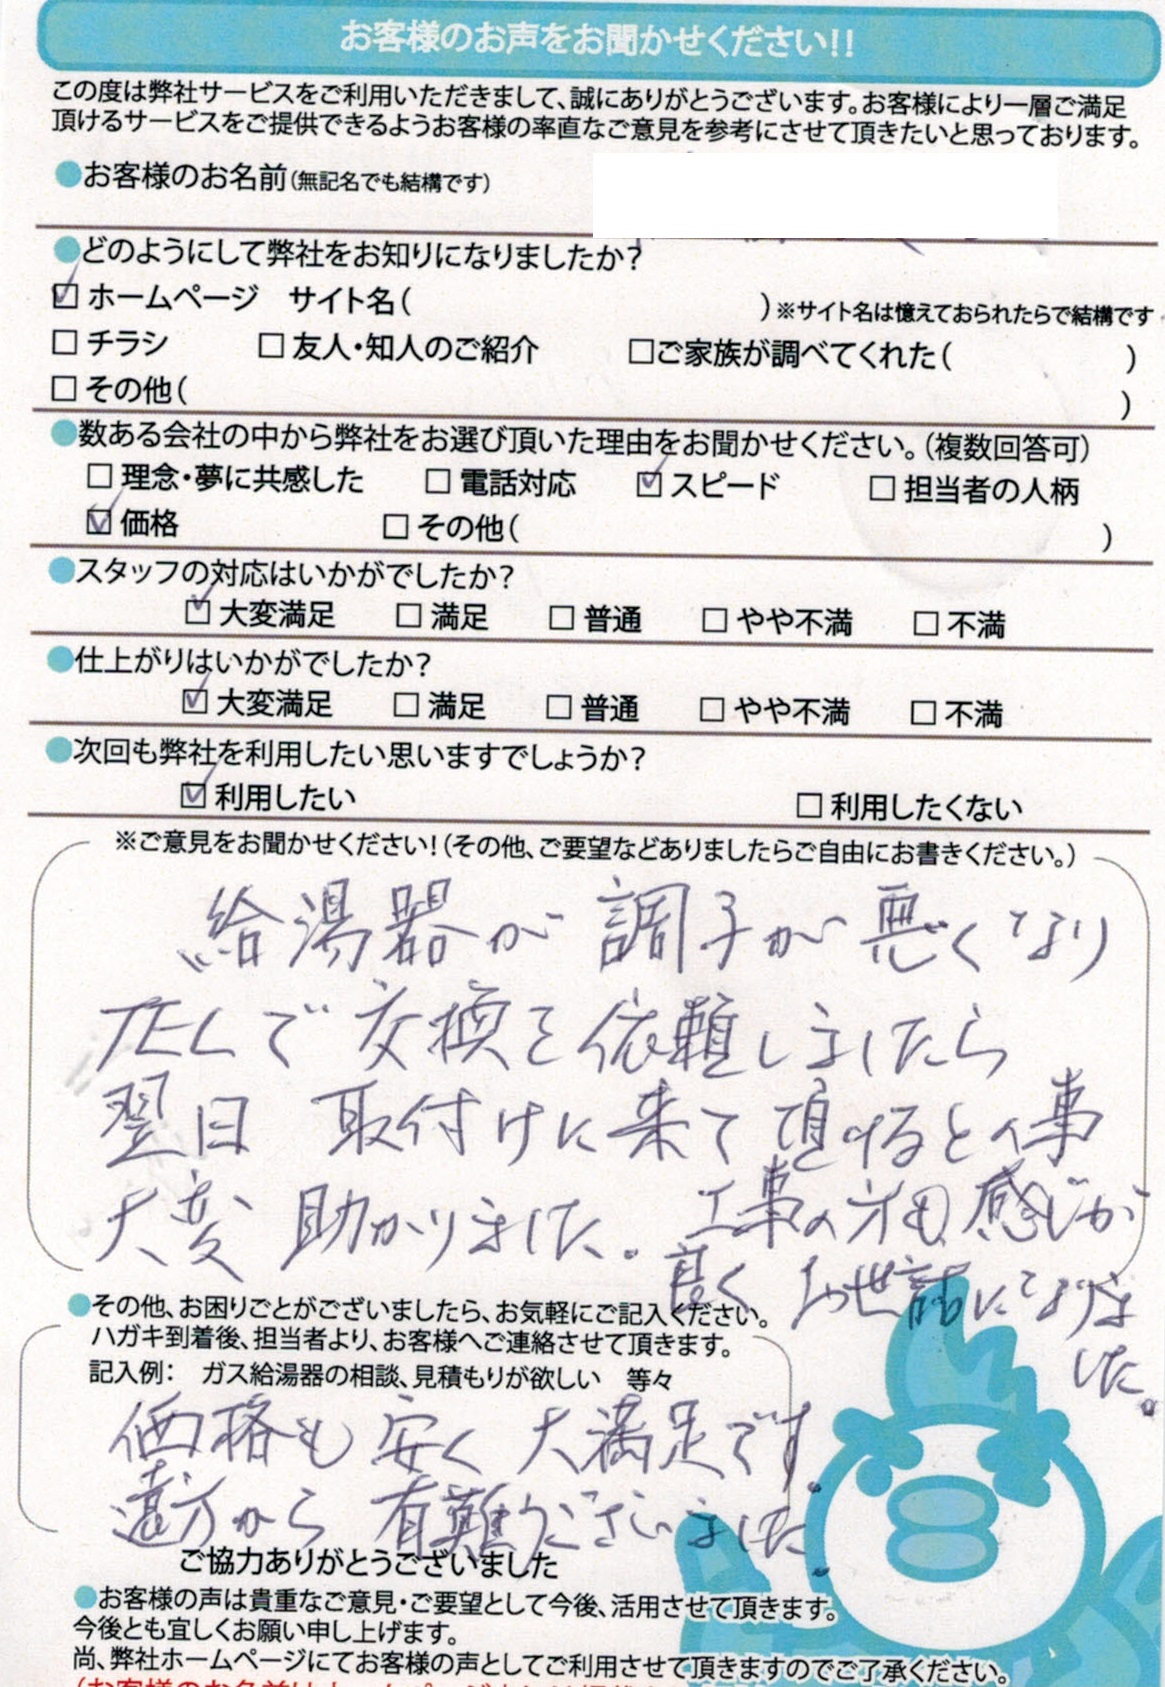 【ハガキ】愛知県知多郡ガス給湯器交換工事お客様の声【アンシンサービス24】